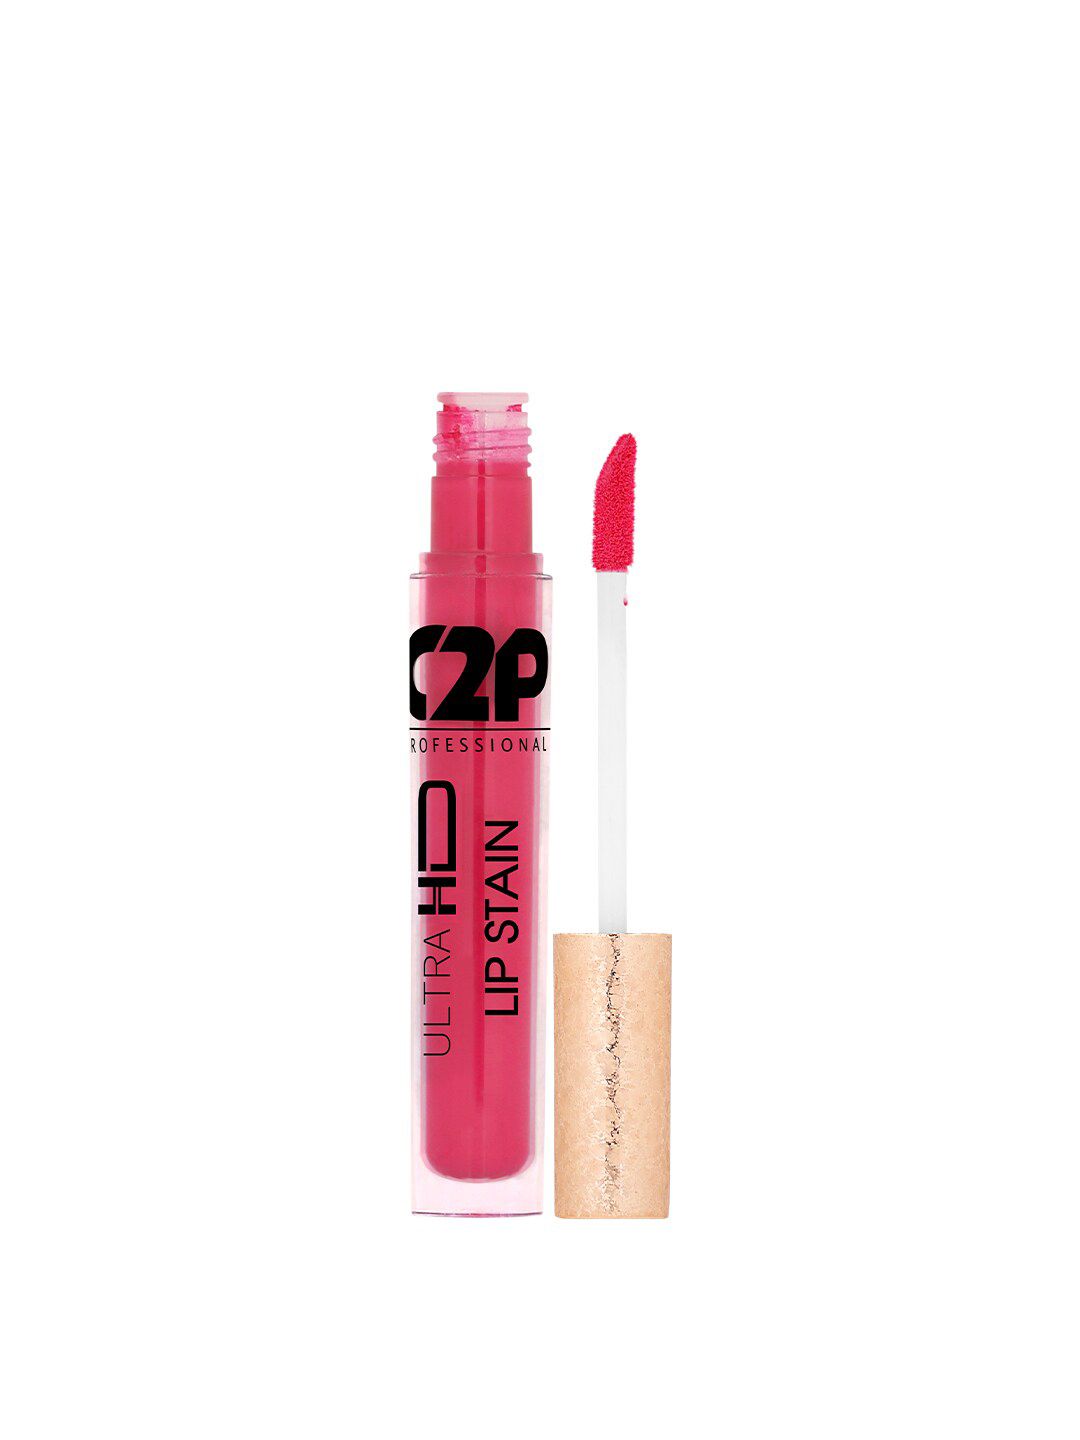 C2P PROFESSIONAL MAKEUP Lip Stain Liquid Lipstick - Mystical Purple 27 5 ml Price in India